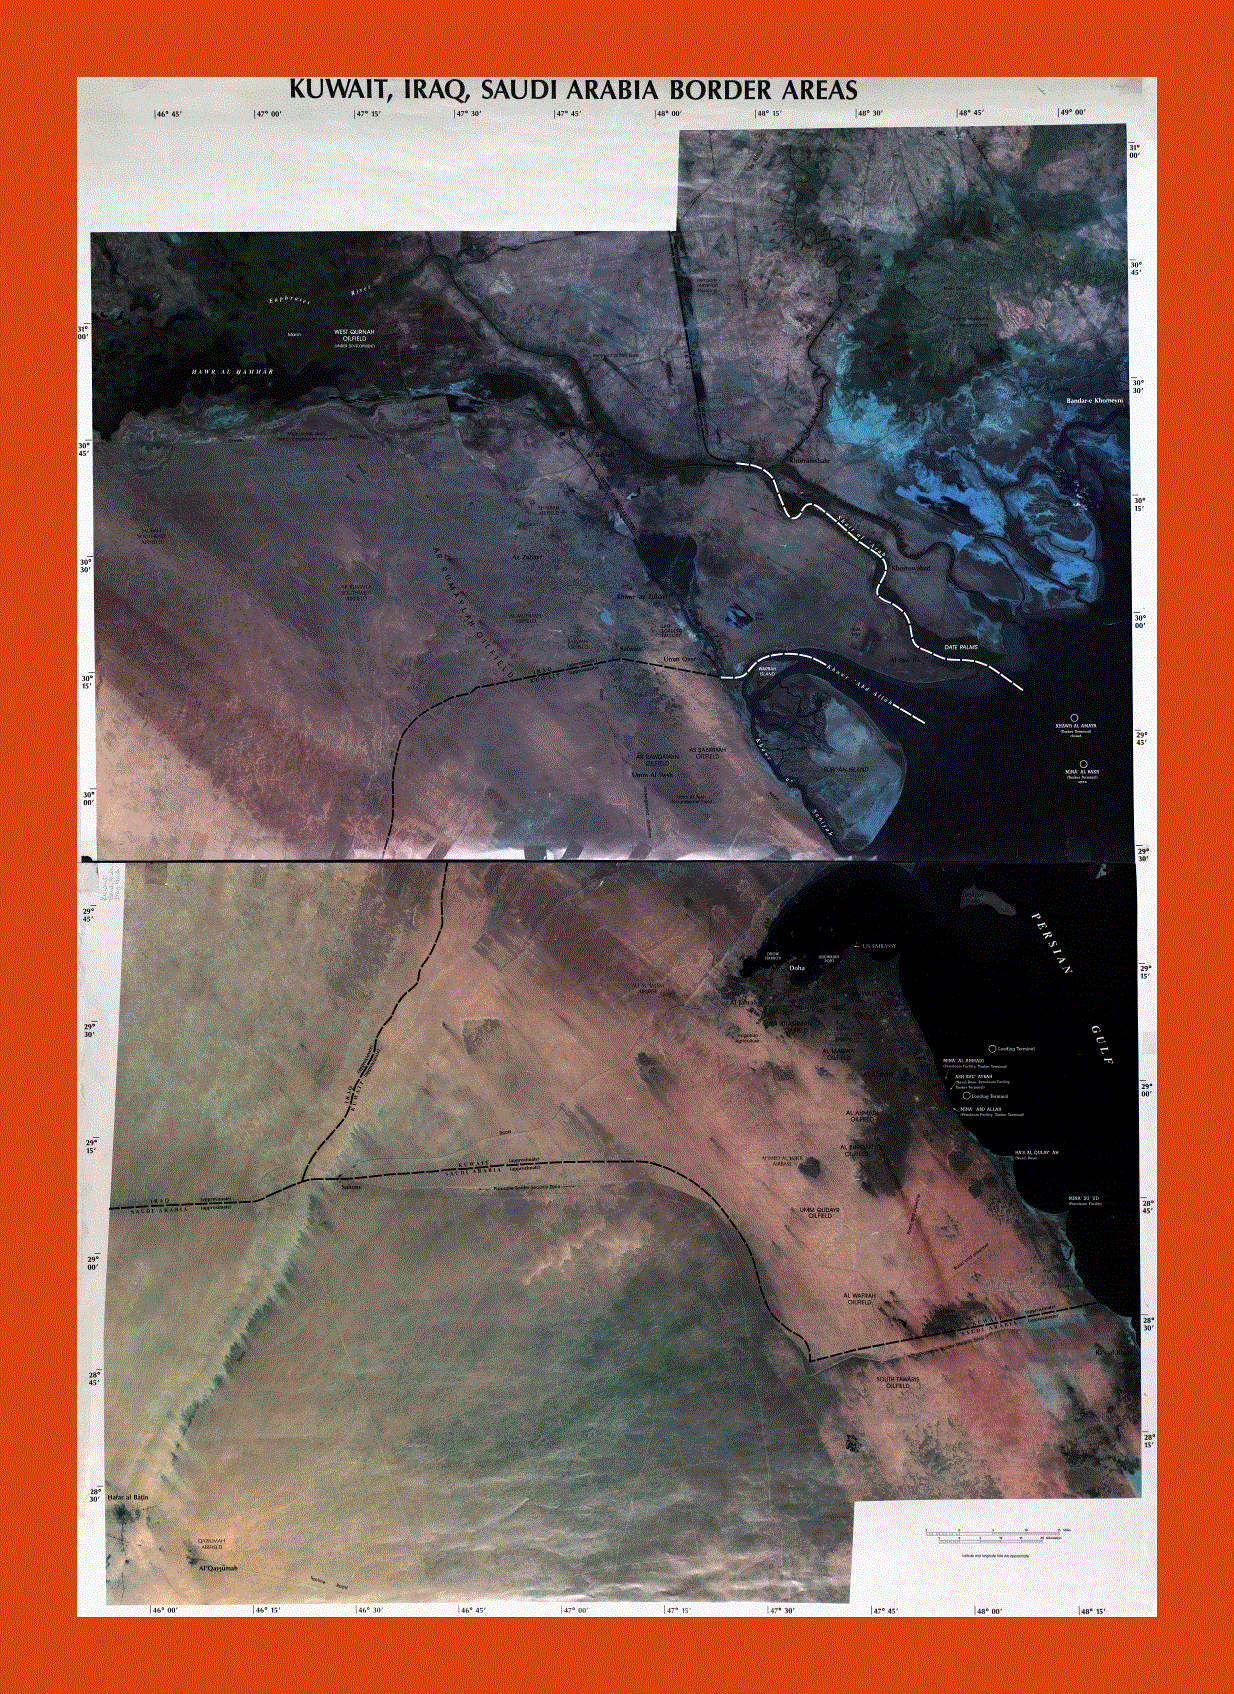 Satellite map of Kuwait, Iraq and Saudi Arabia border areas - 2003